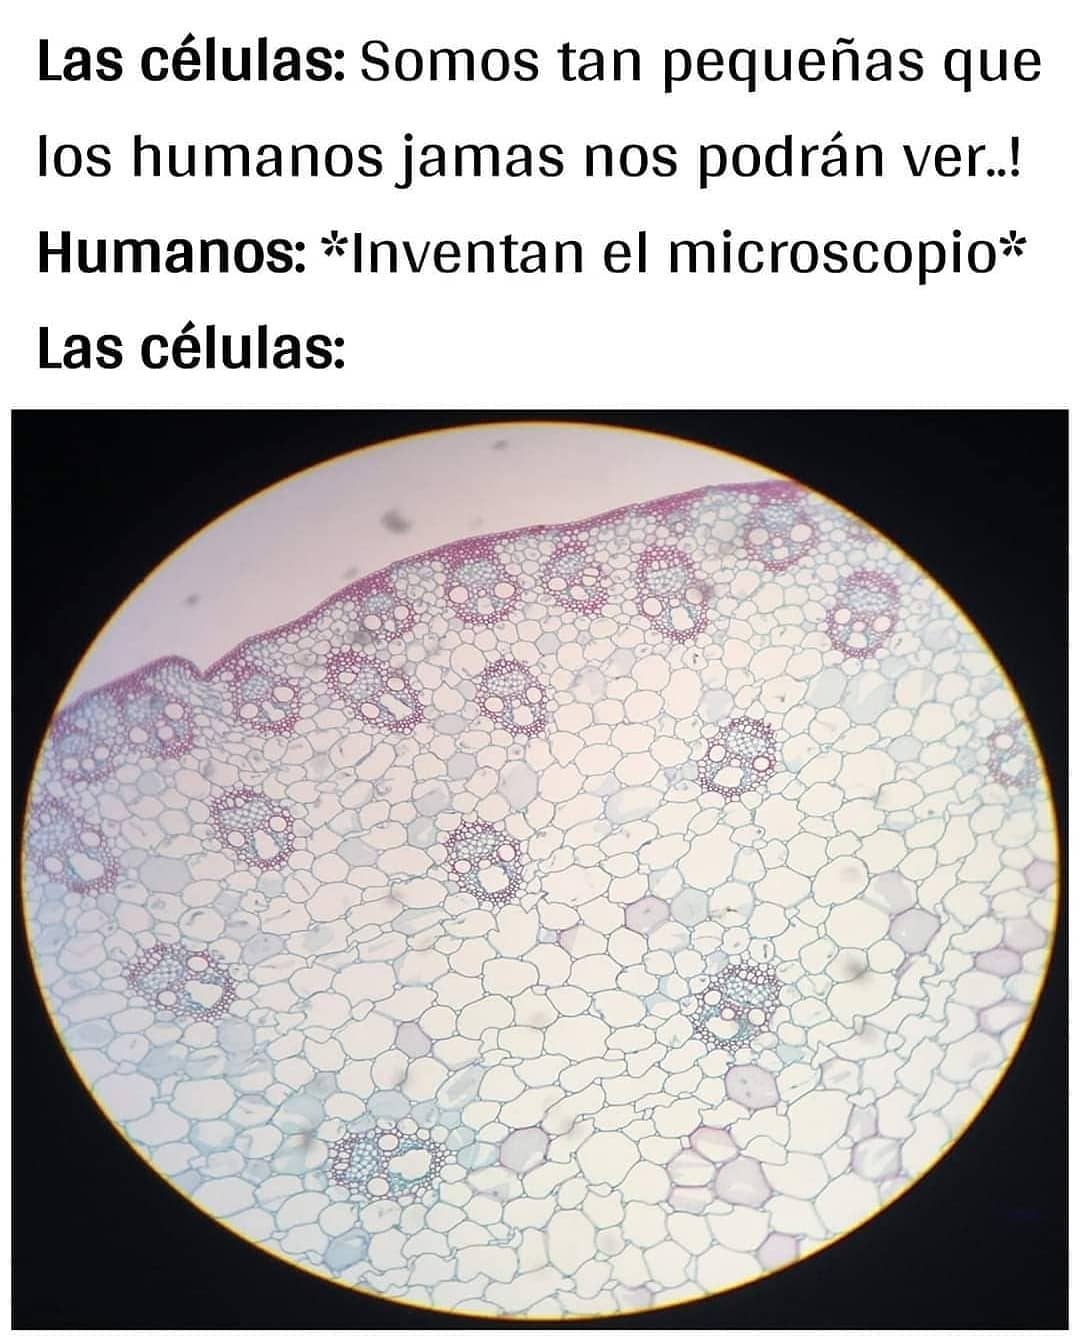 Las células: Somos tan pequeñas que los humanos jamas nos podrán ver..!  Humanos: *Inventan el microscopio*  Las células: